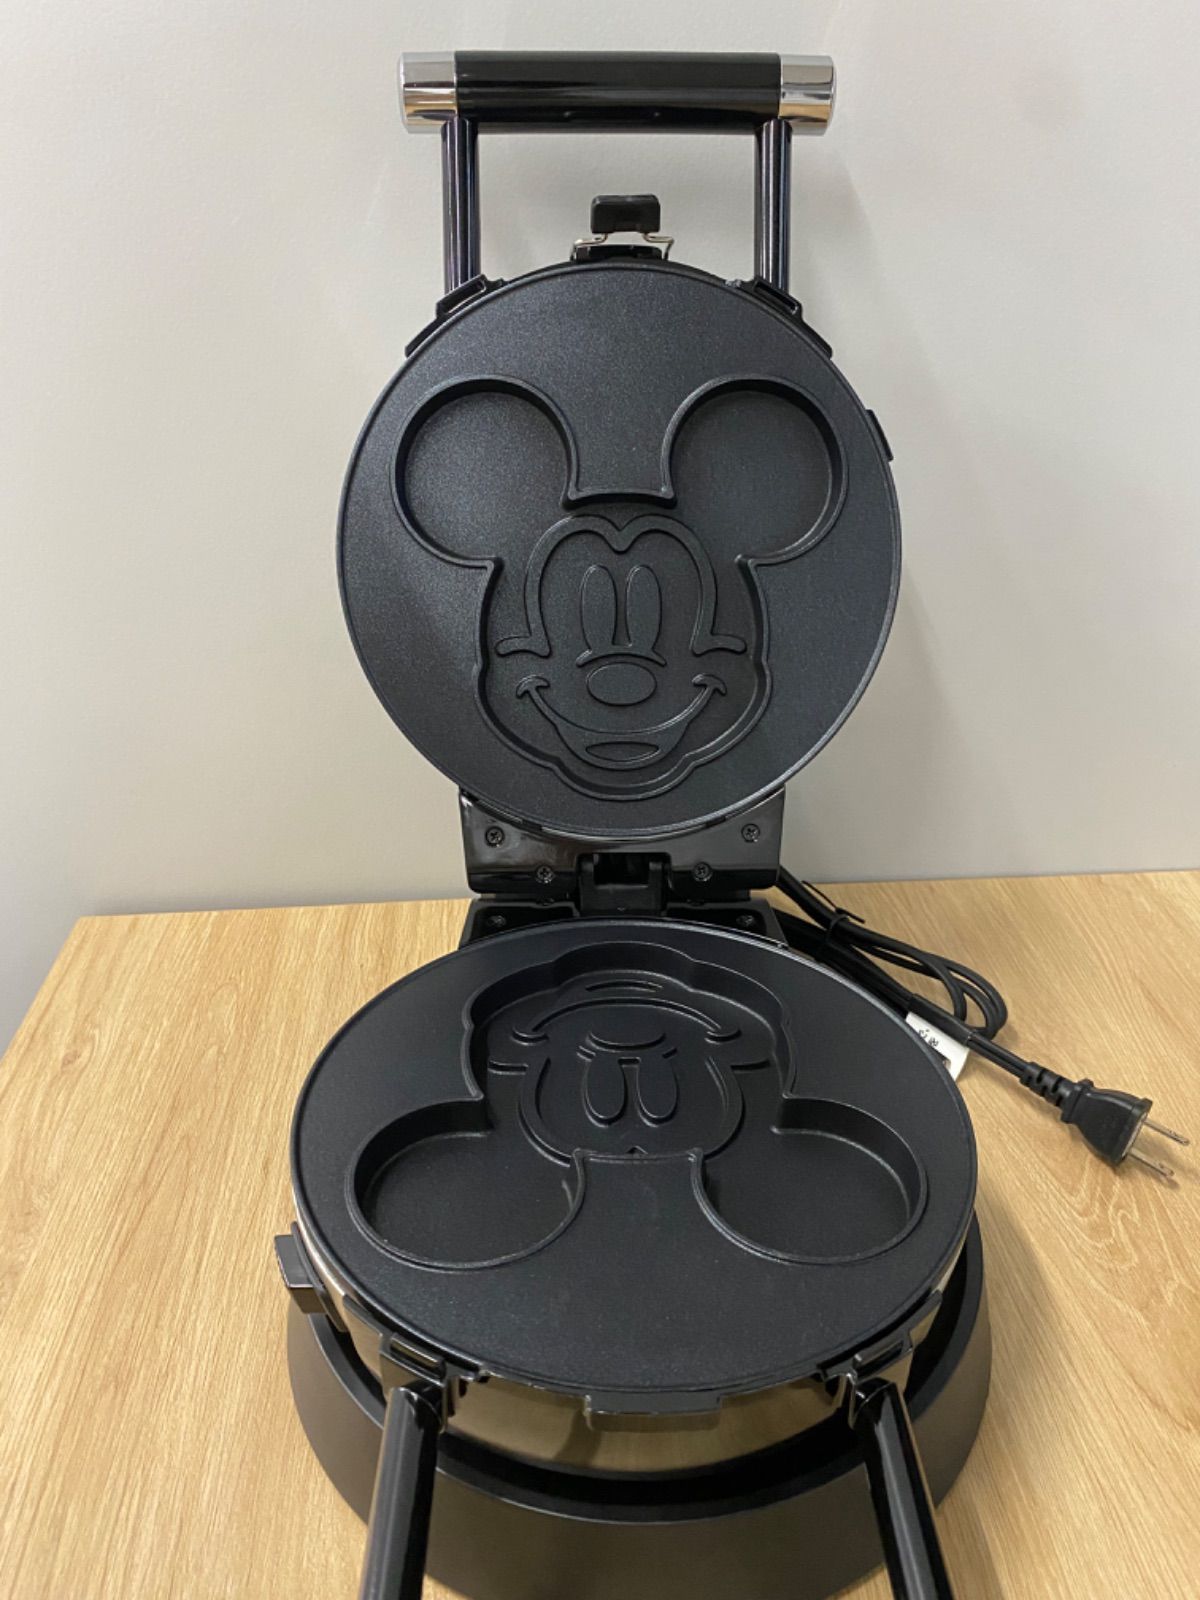  Doshisha Waffle Maker DisneyCharacter Series Mickey